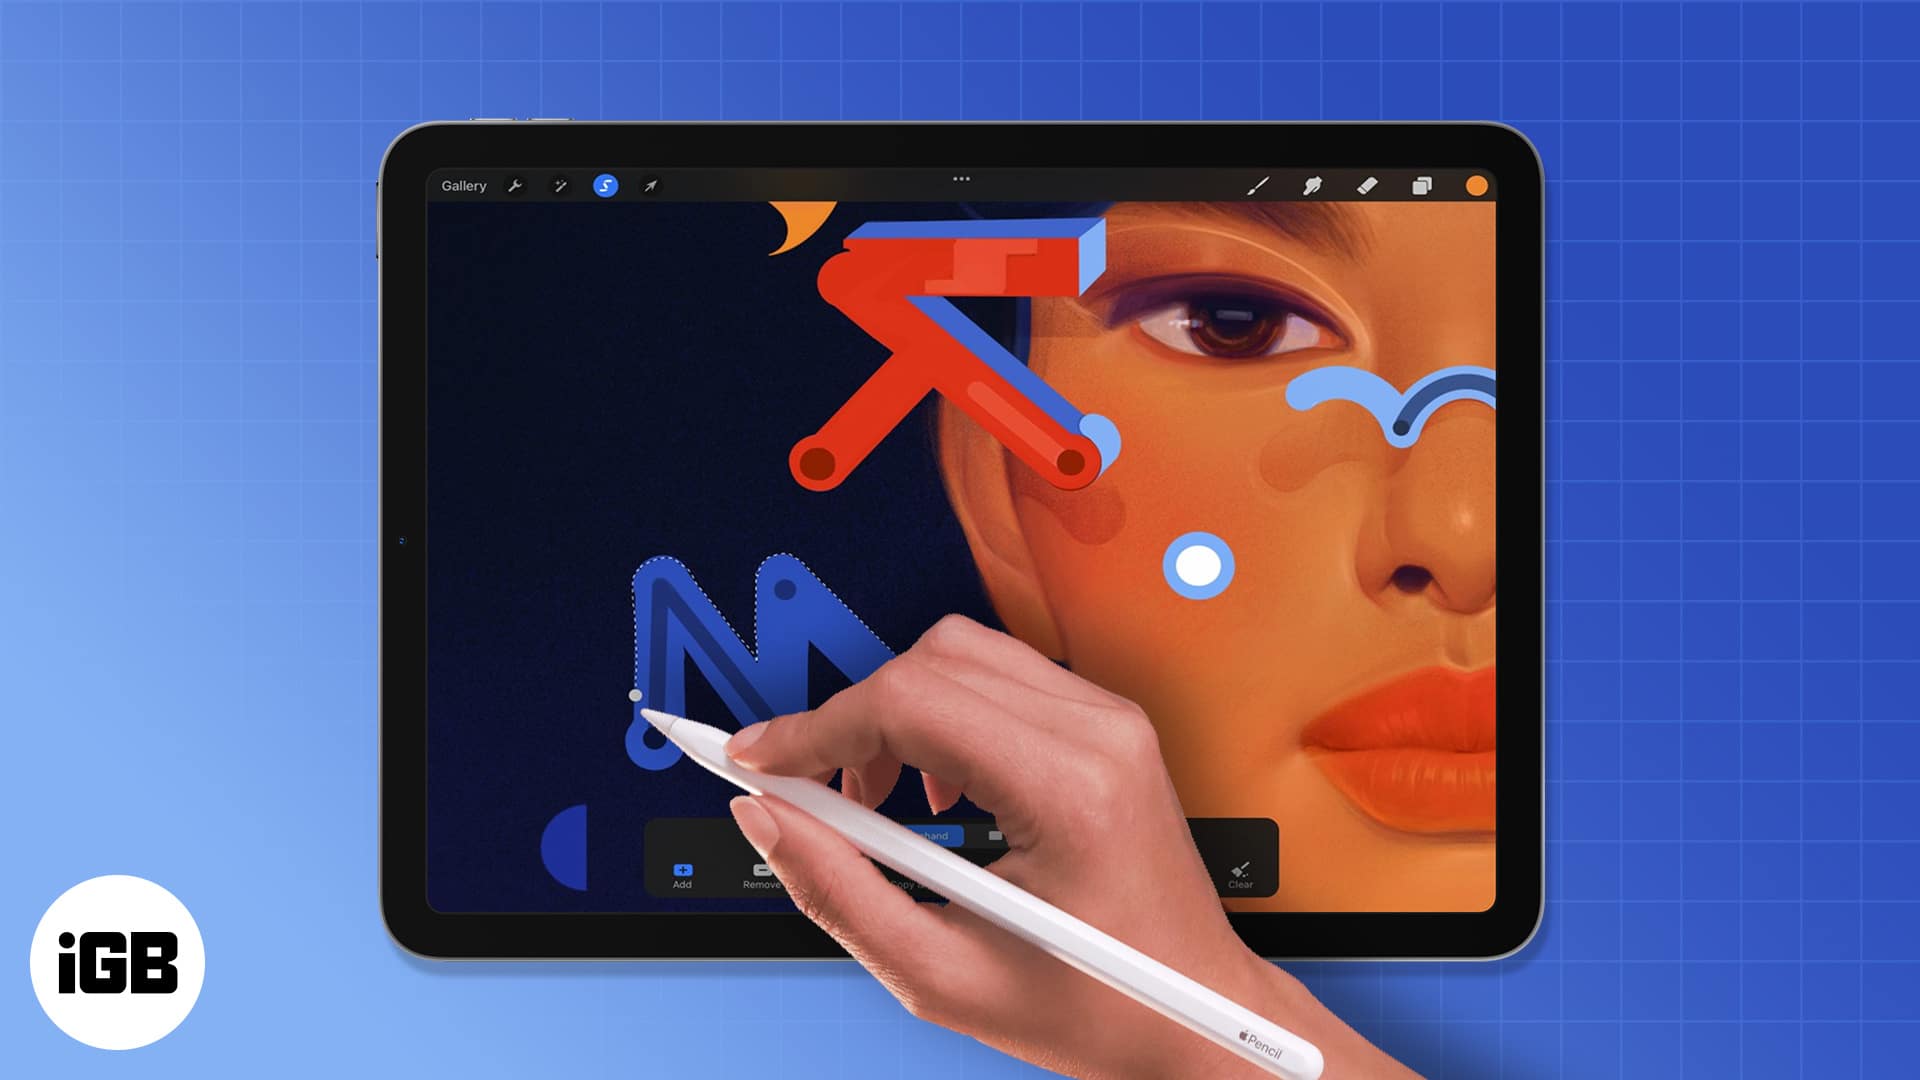 Với Procreate trên iPad, bạn có thể thực hiện nhiều điều tuyệt vời với bút vẽ kỹ thuật số. Đây là công cụ hoàn hảo để tạo ra các tác phẩm nghệ thuật số vô cùng độc đáo và bắt mắt, giúp bạn thỏa sức khám phá và sáng tạo.